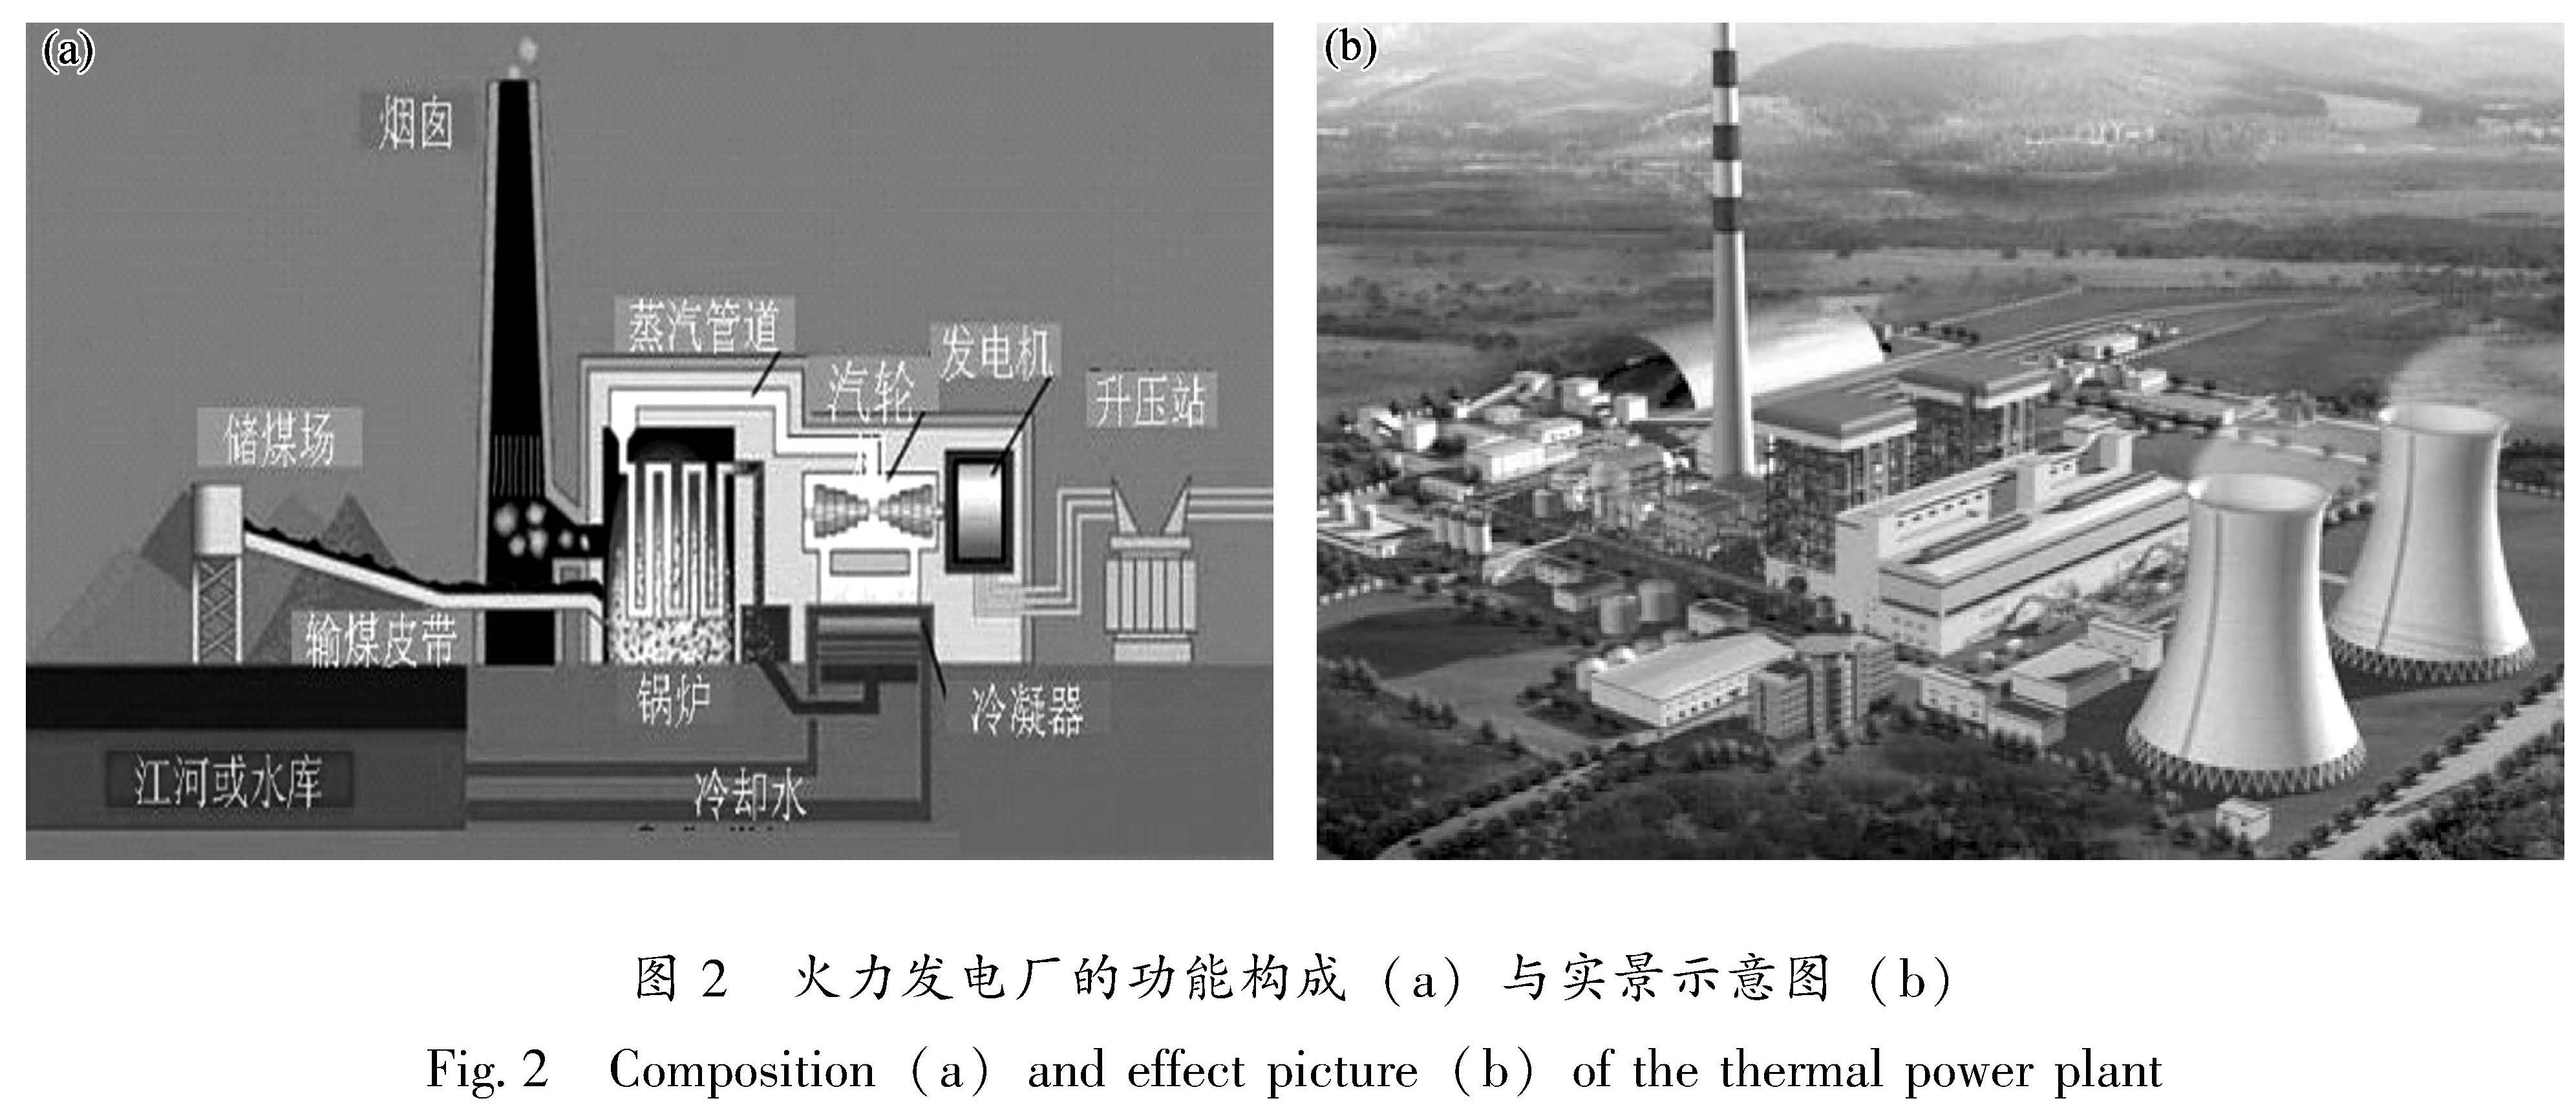 图2 火力发电厂的功能构成(a)与实景示意图(b)<br/>Fig.2 Composition(a)and effect picture(b)of the thermal power plant